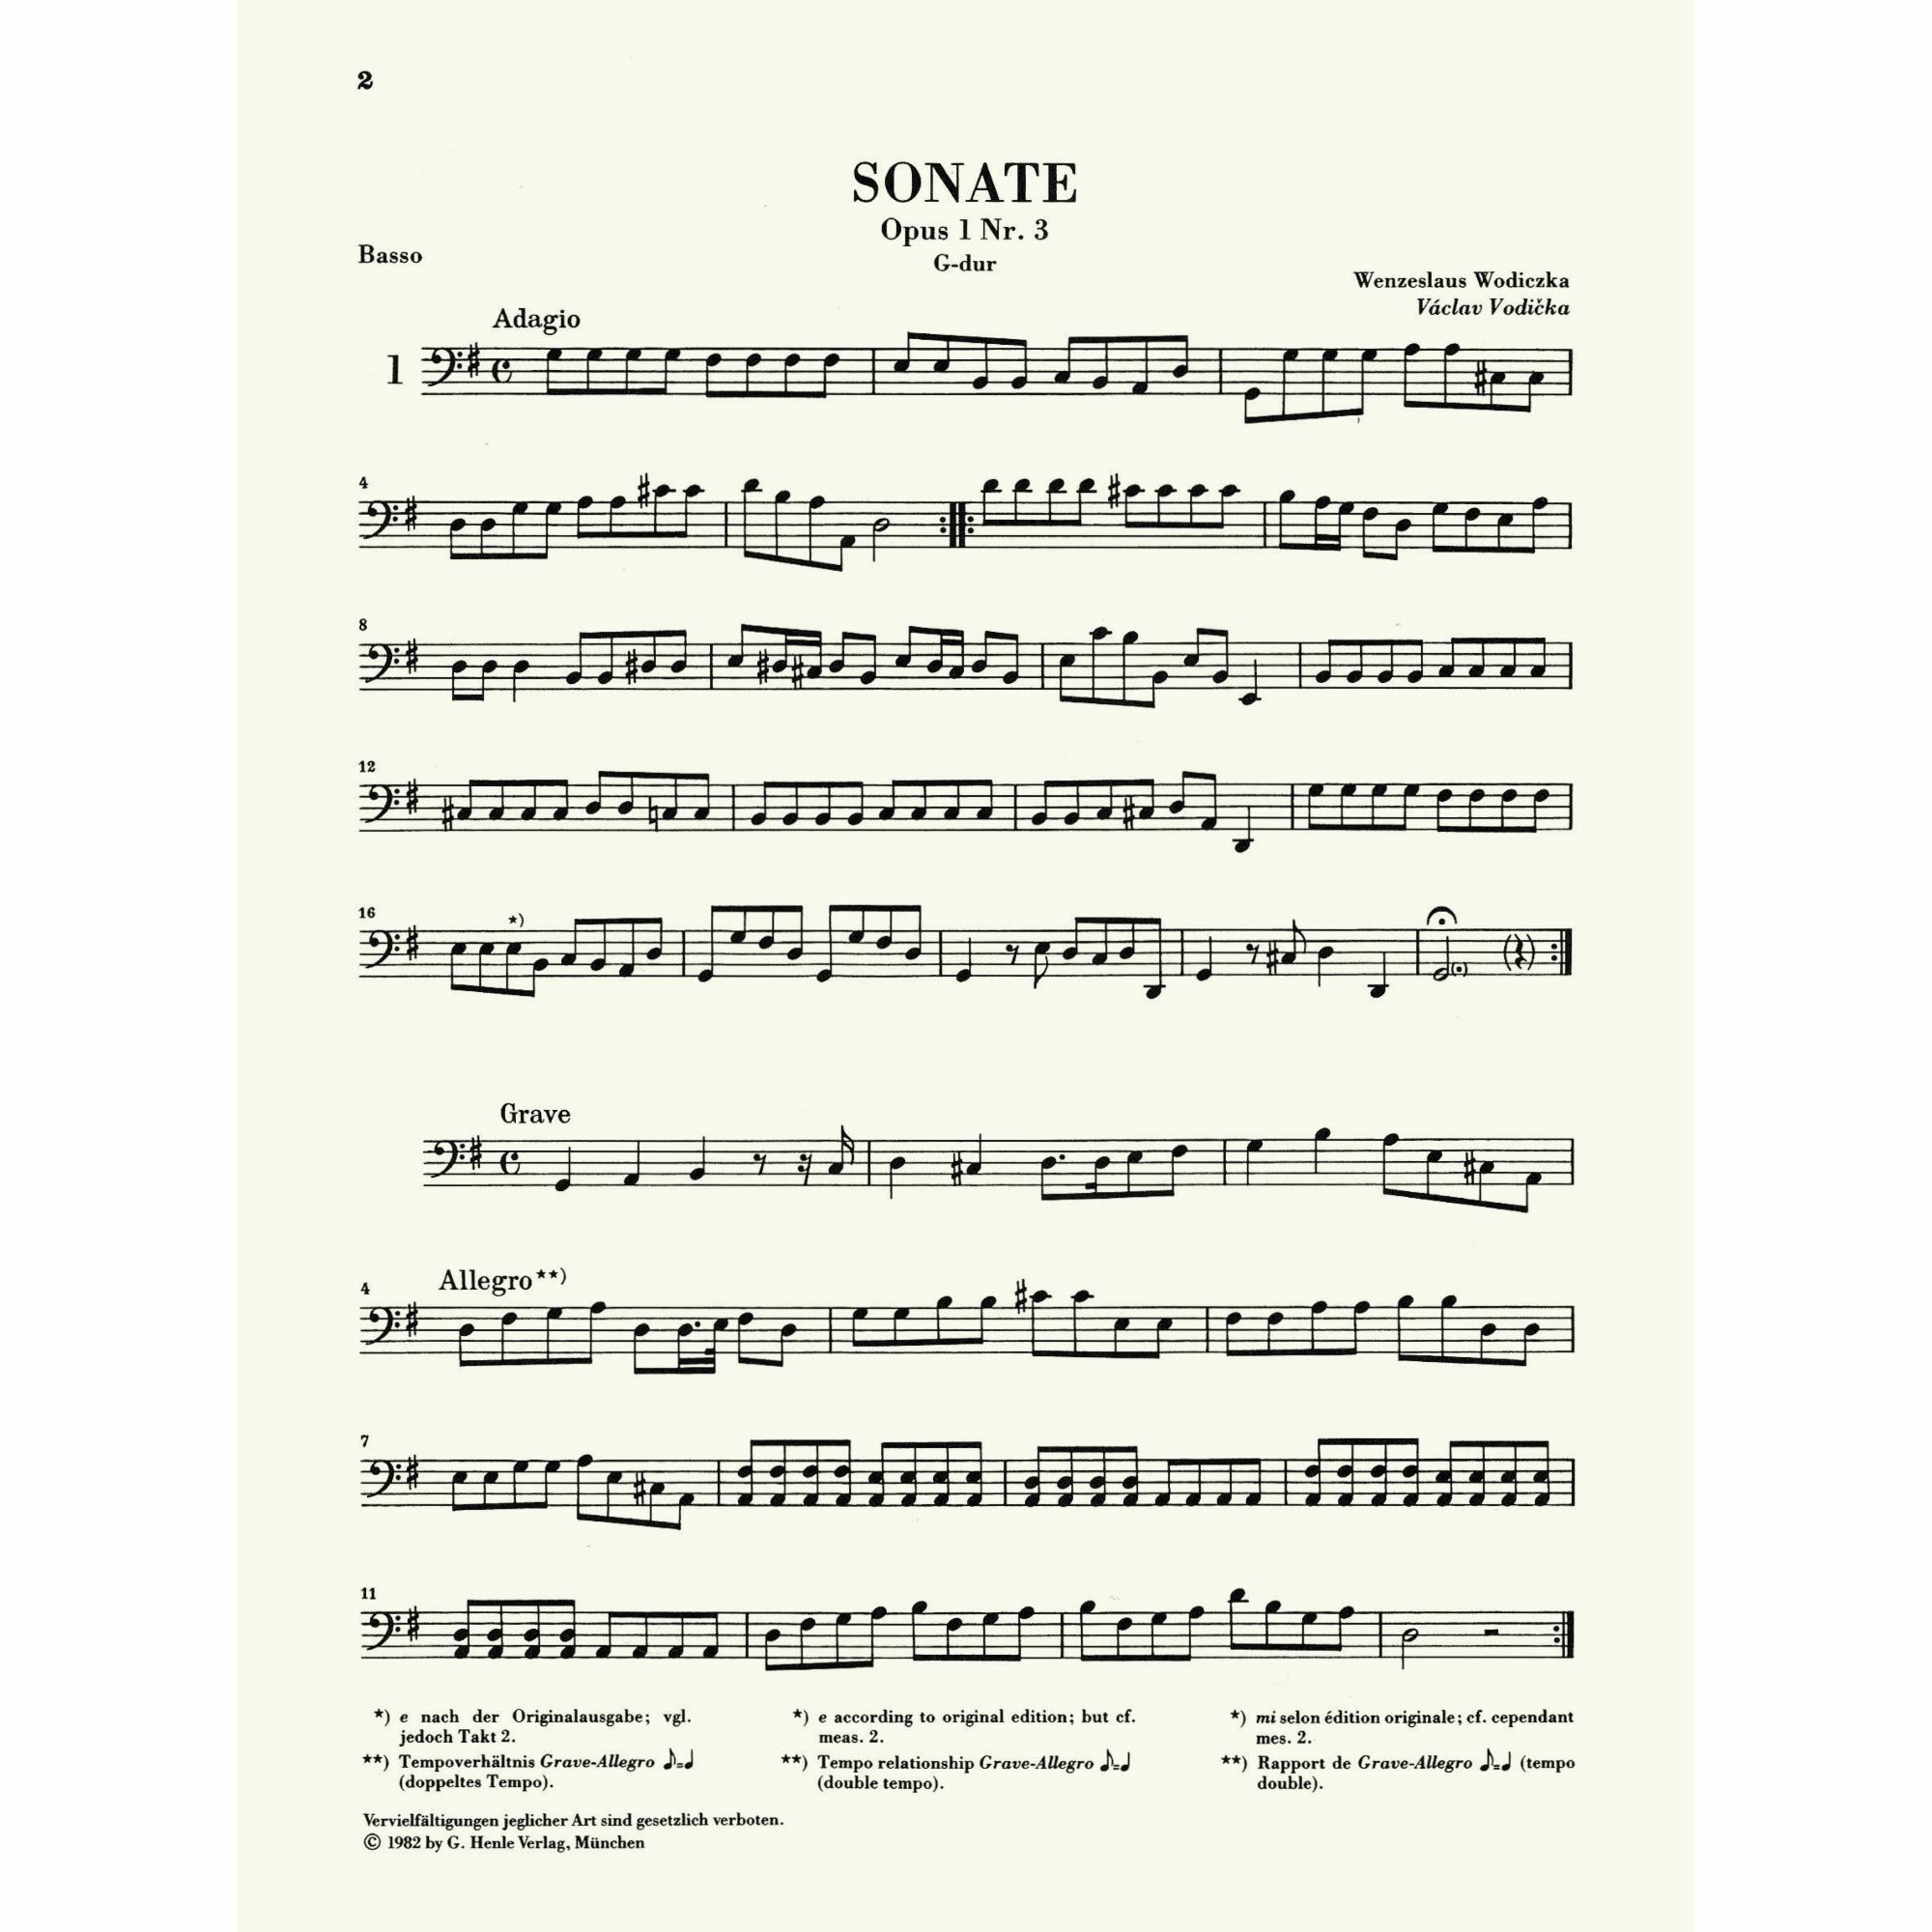 Sample: Vol. I, Cello (Pg. 2)